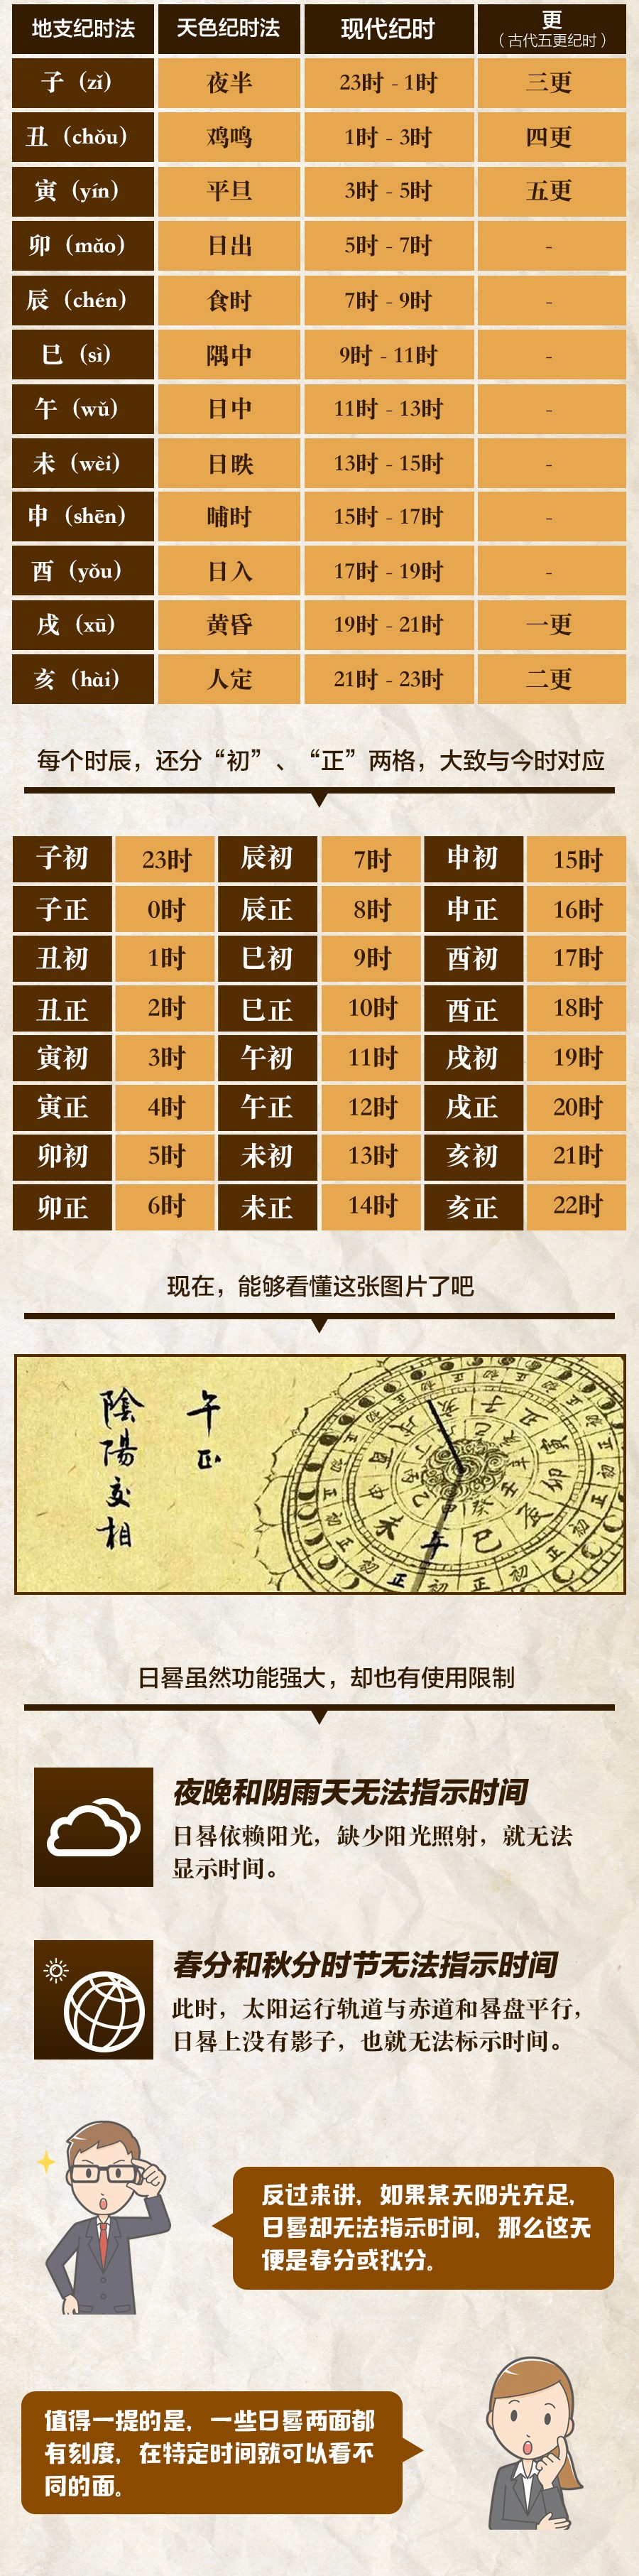 《长安十二时辰》中日晷图你会看吗？日晷在古代是如何计时的？